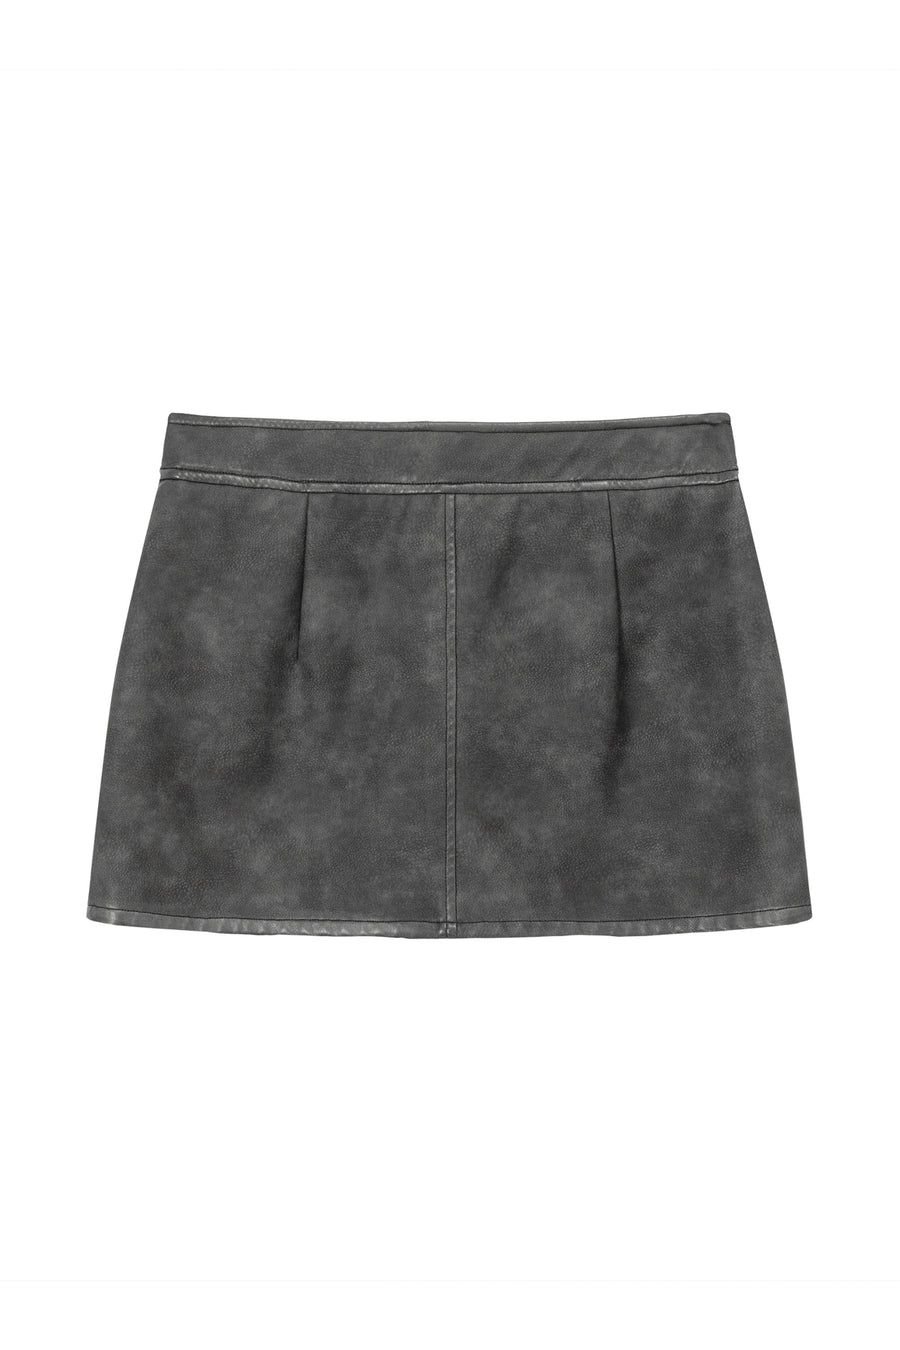 CHUU Zipper Leather Mini Skirt